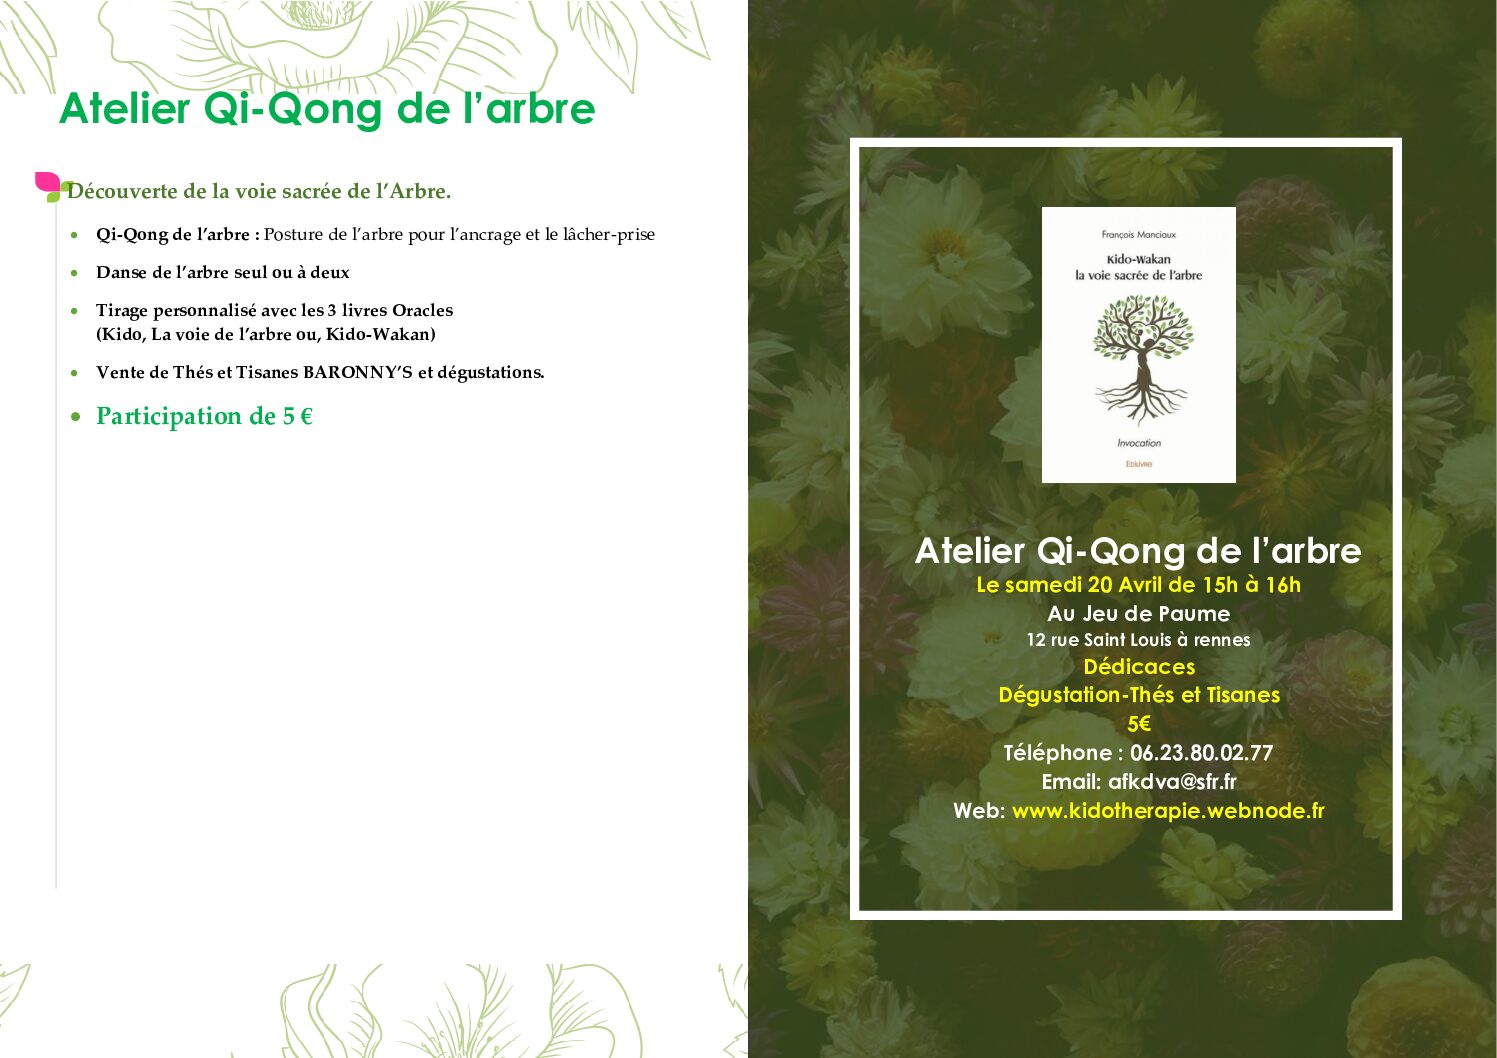 Atelier Qi-Qong de l’arbre